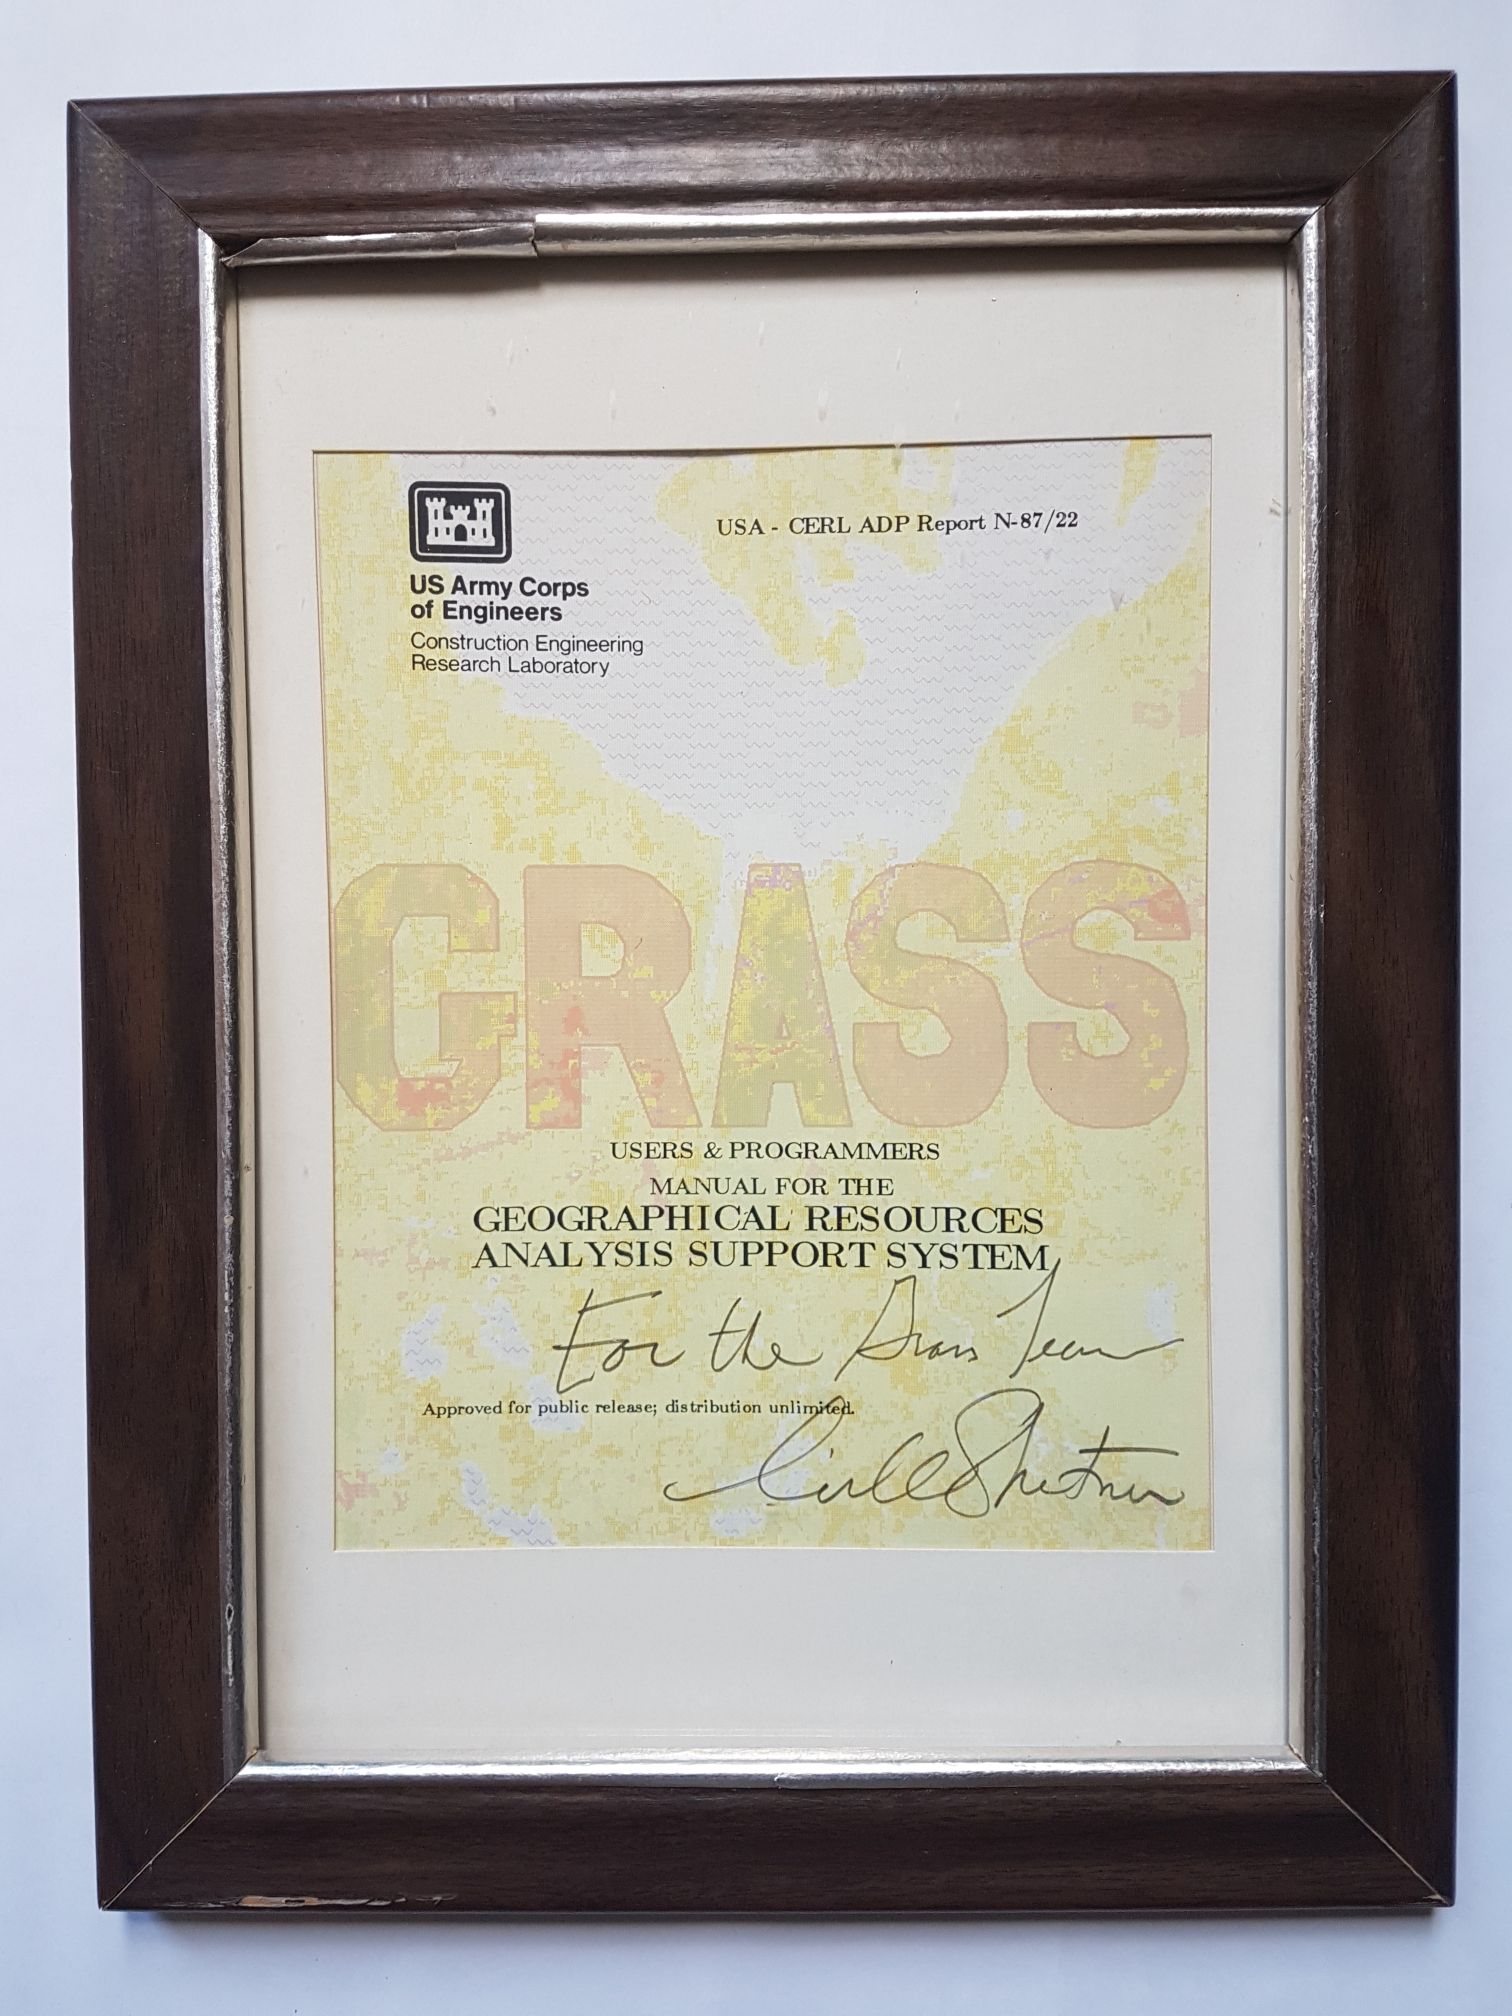 File:Grass manual signed framed.jpg